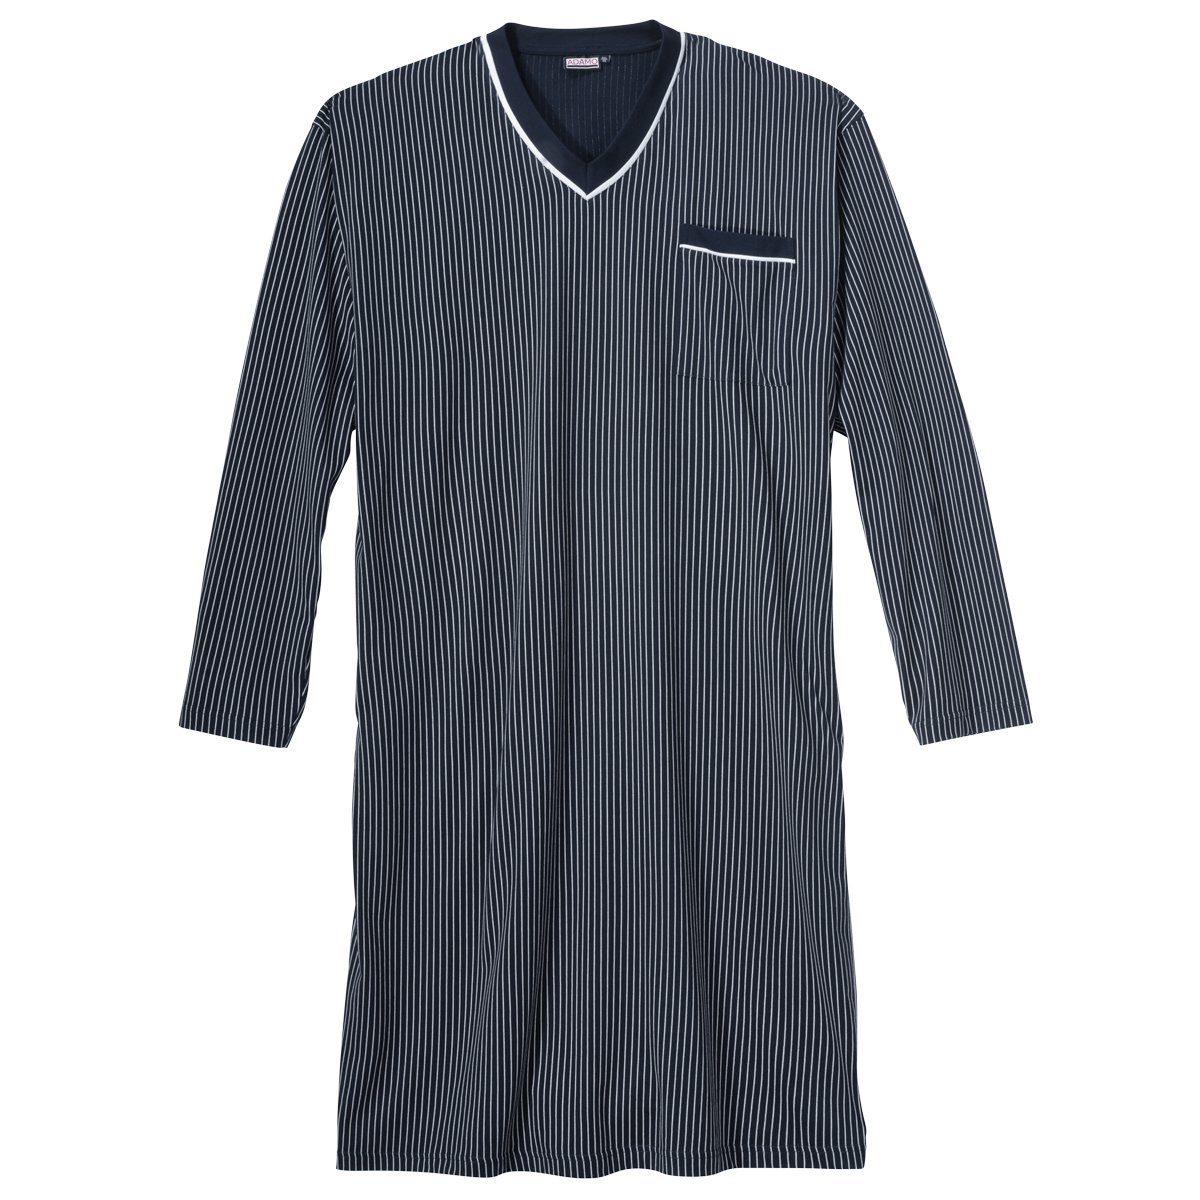 Langarm-Nachthemd Große Adamo dunkelblau-weiß ADAMO Nachthemd Größen